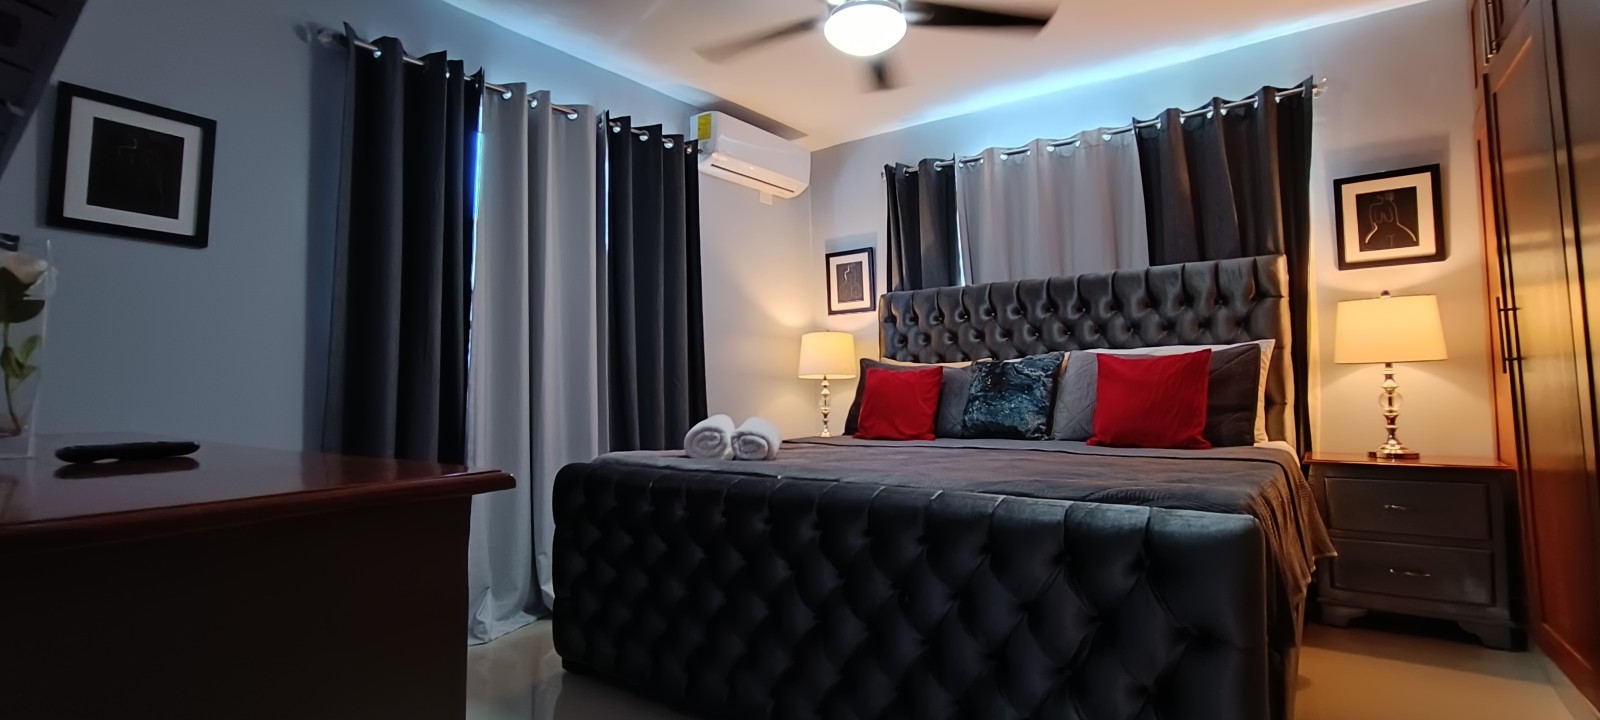 apartamentos - Airbnb AMUEBLADO en villa Olga seguro y confort 1